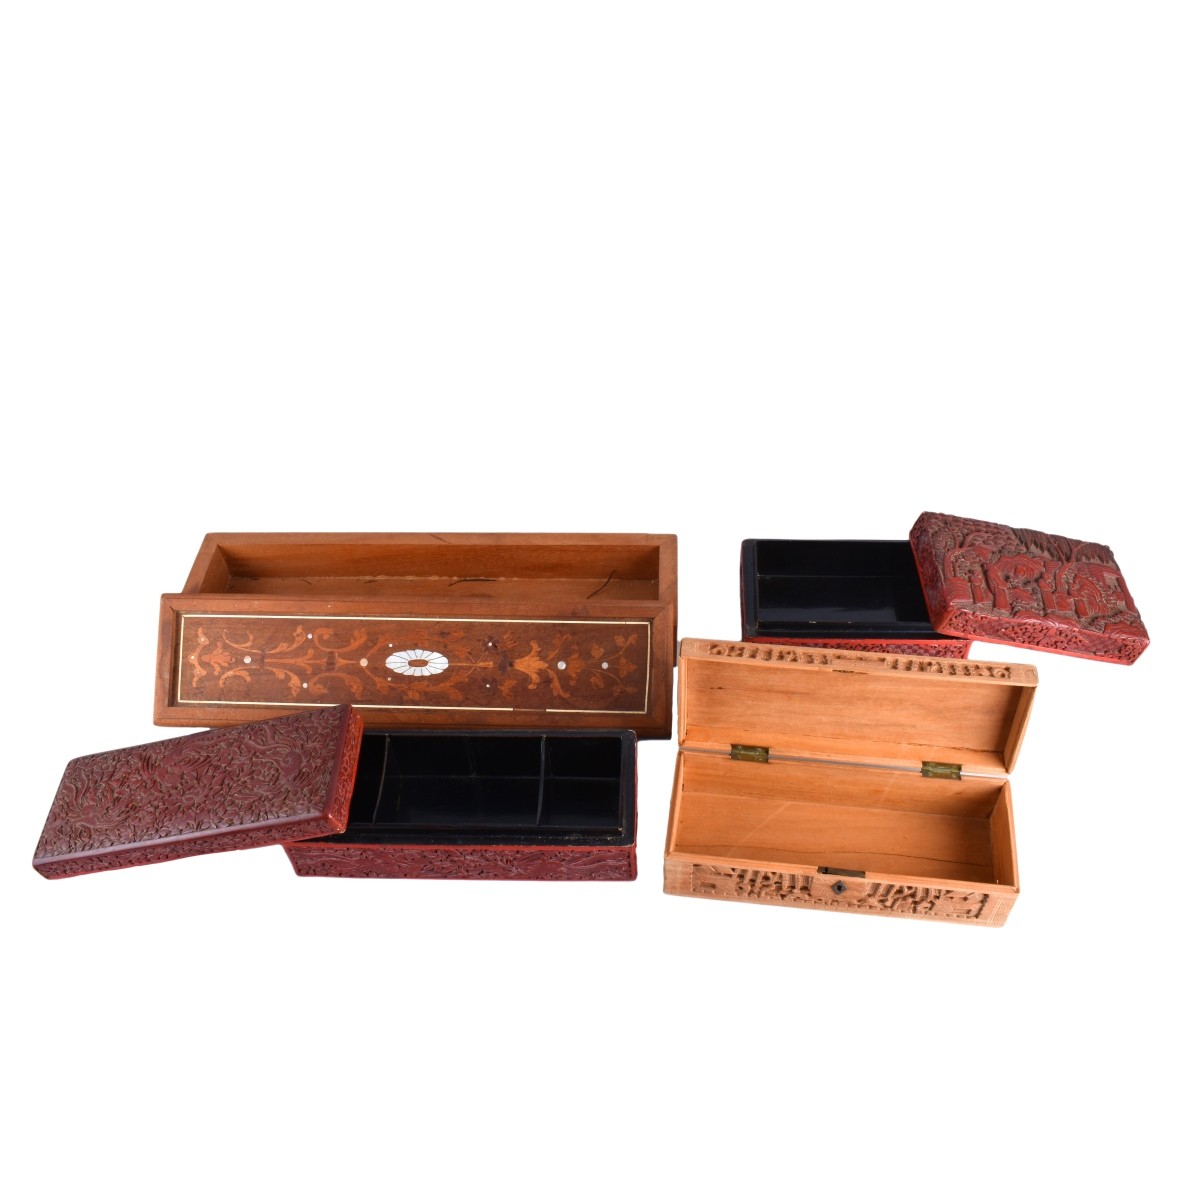 Four Vintage Wooden Boxes